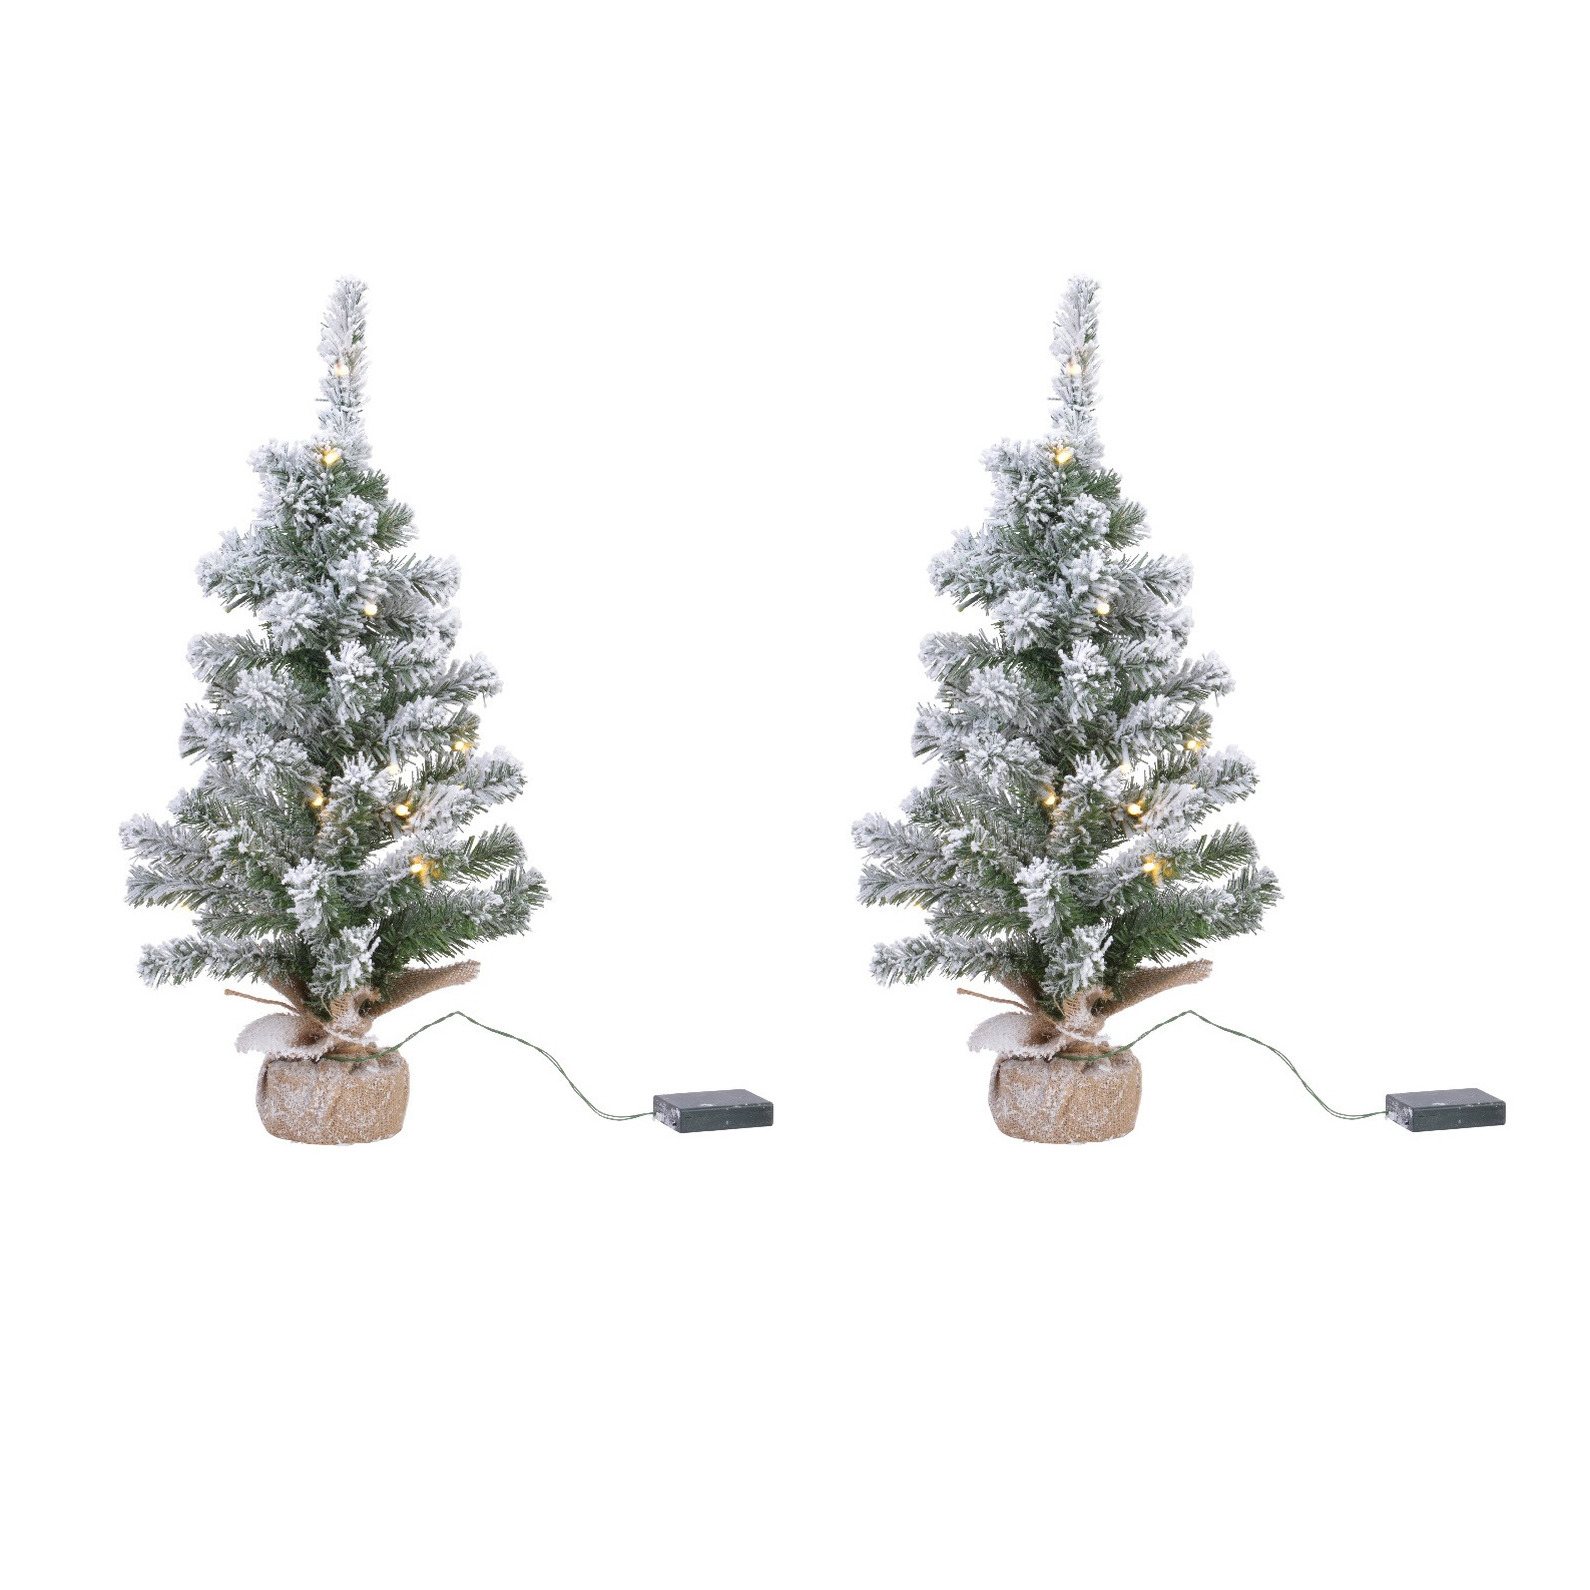 2x stuks kunstboom-kunst kerstboom met sneeuw en licht 75 cm